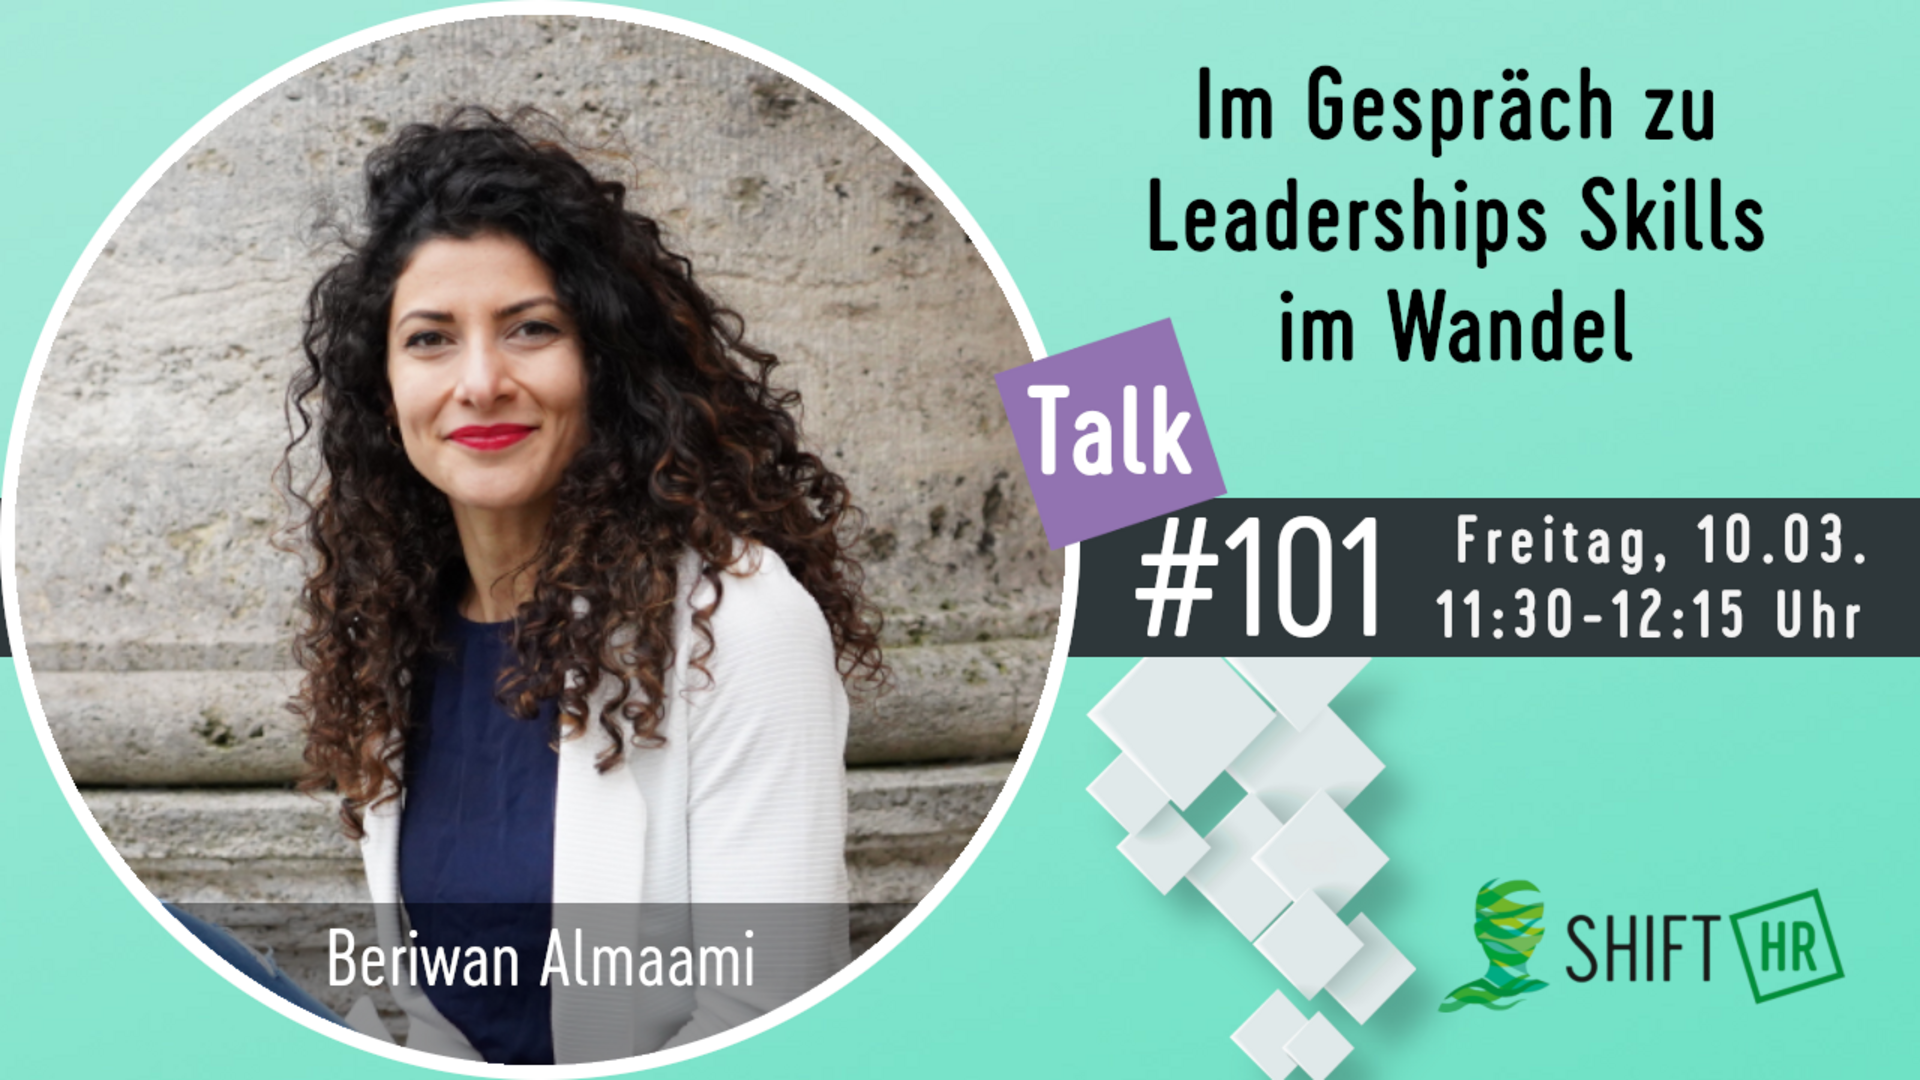 Im Gespräch mit Beriwan Almaami zu den Leaderships Skills im Wandel